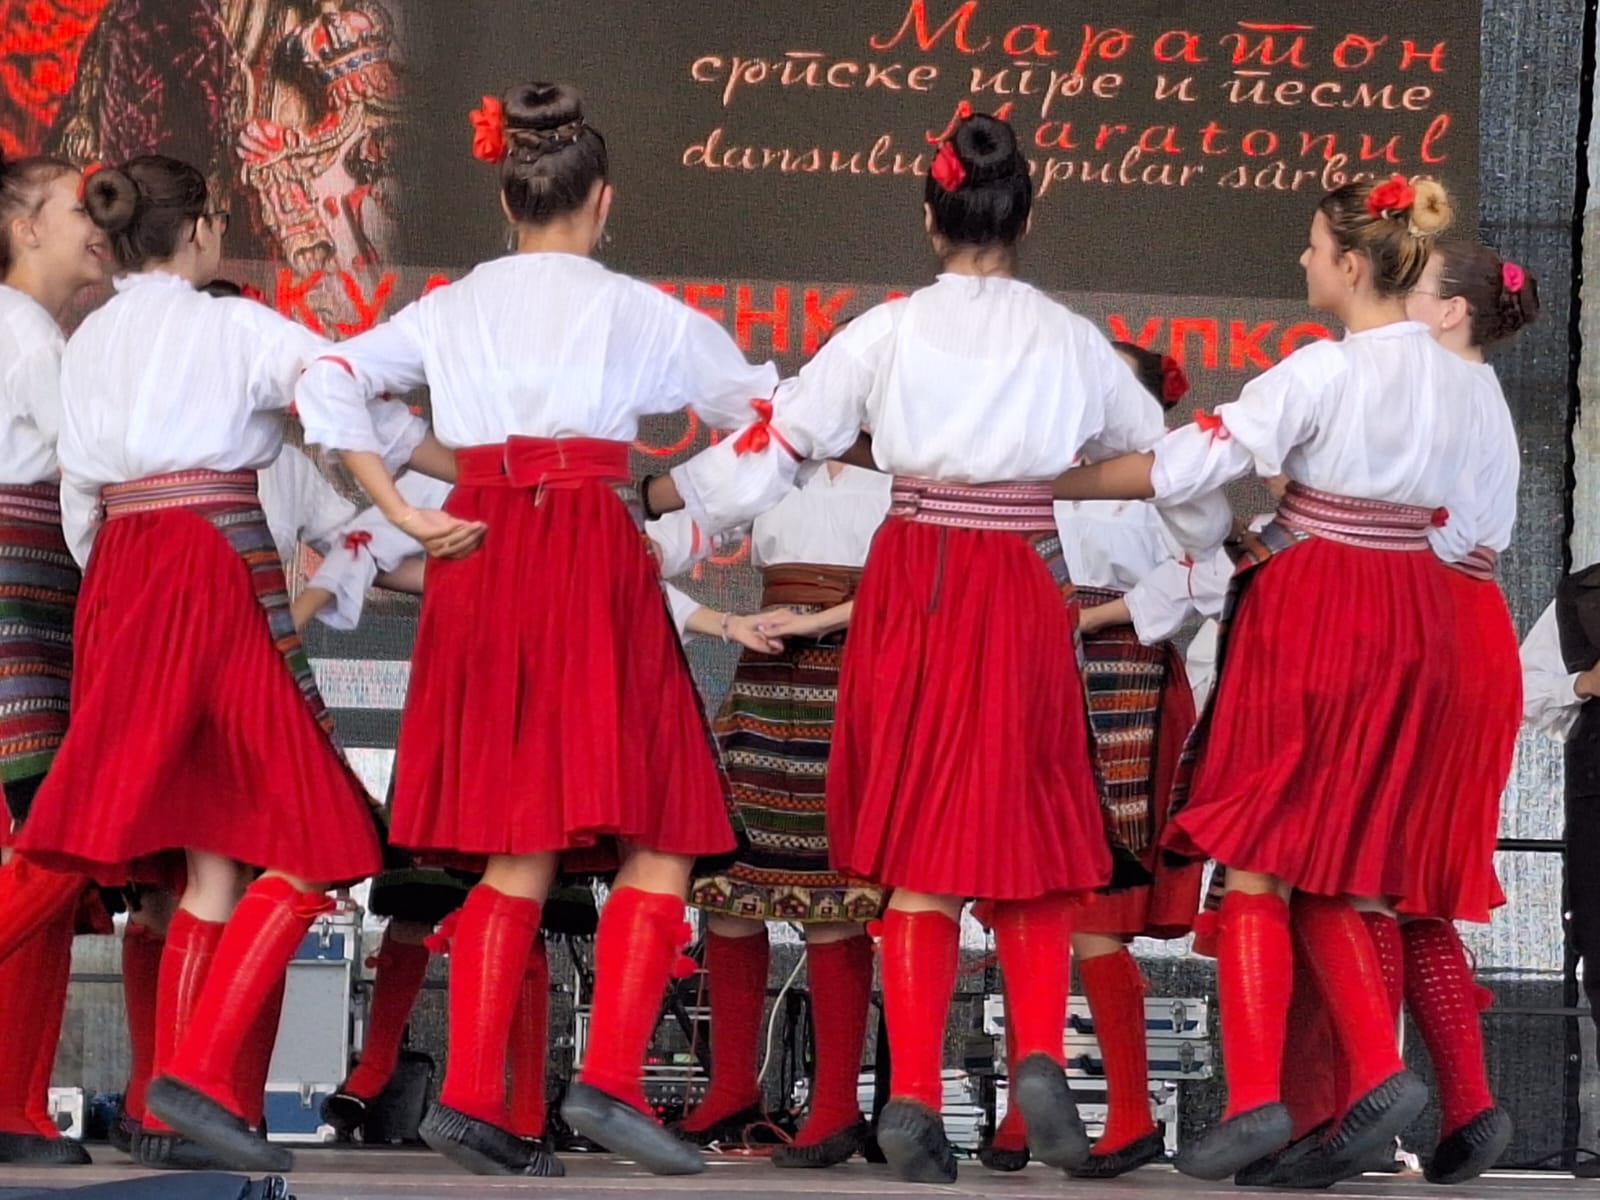 Festivalul Maratonul dansului popular sârbesc